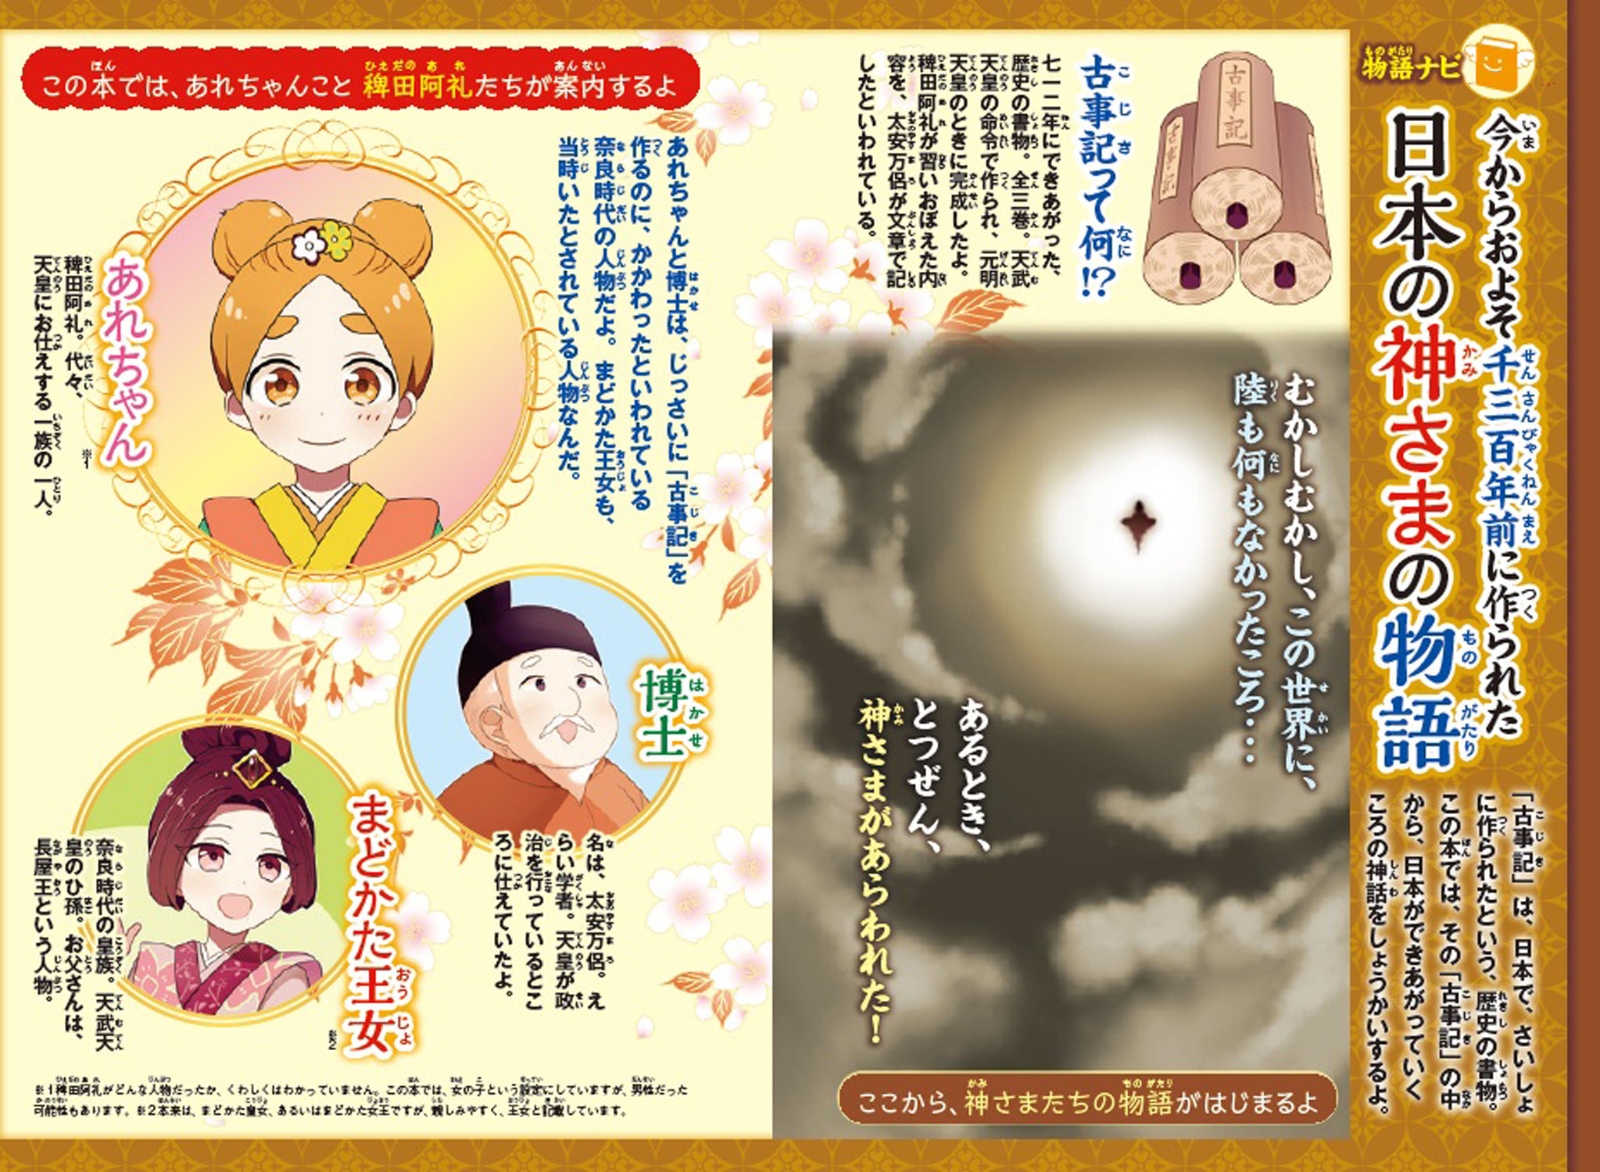 公式 全集 双書 書籍 日本の神話古事記えほんシリーズ 全5巻セット 送料無料 21福袋 Ggjapan Jp